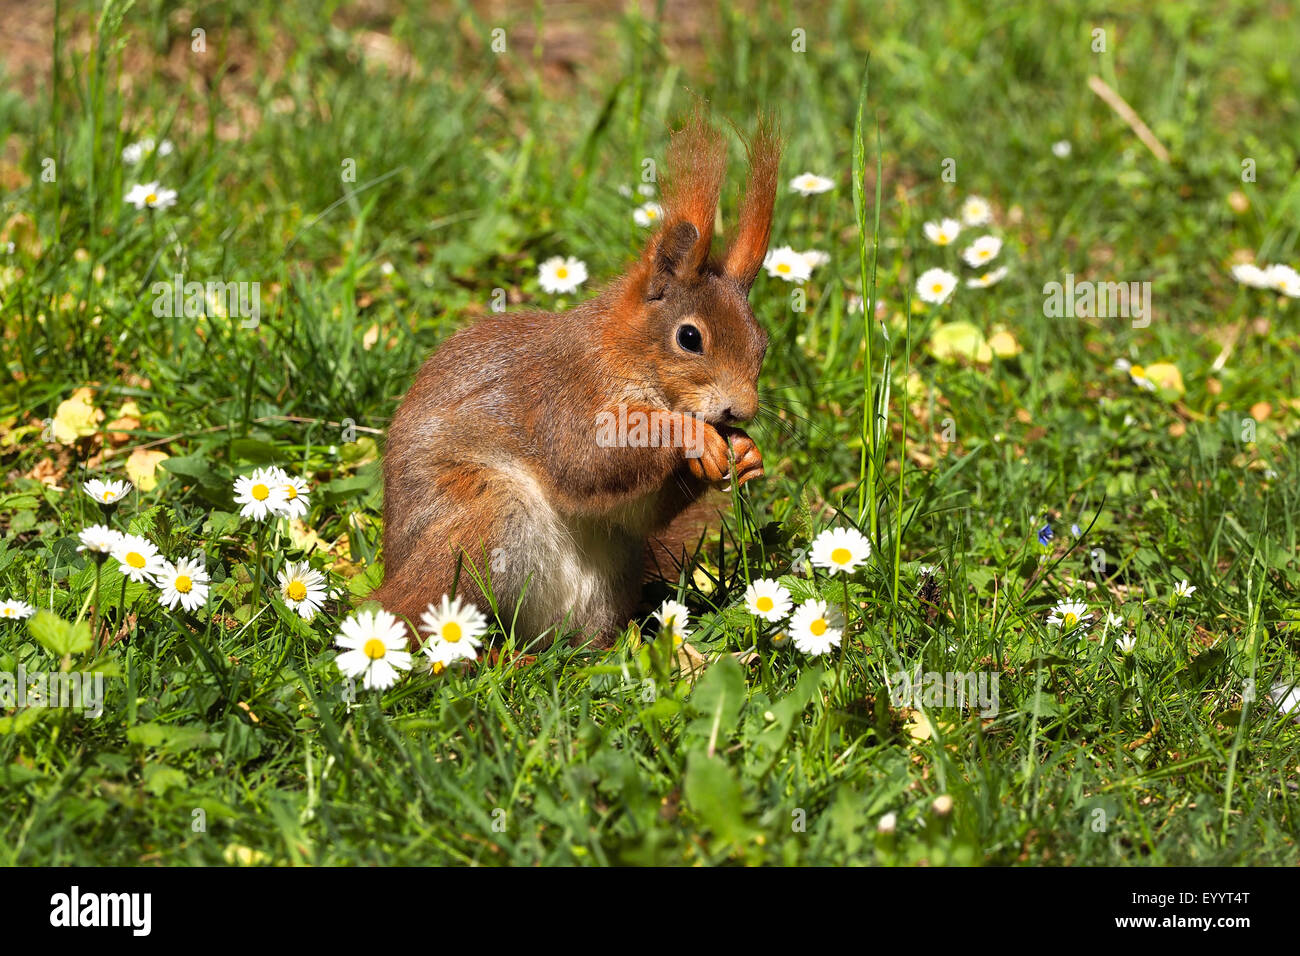 Unione scoiattolo rosso, Eurasian red scoiattolo (Sciurus vulgaris), in un prato con le comuni margherite, Germania, Sassonia Foto Stock